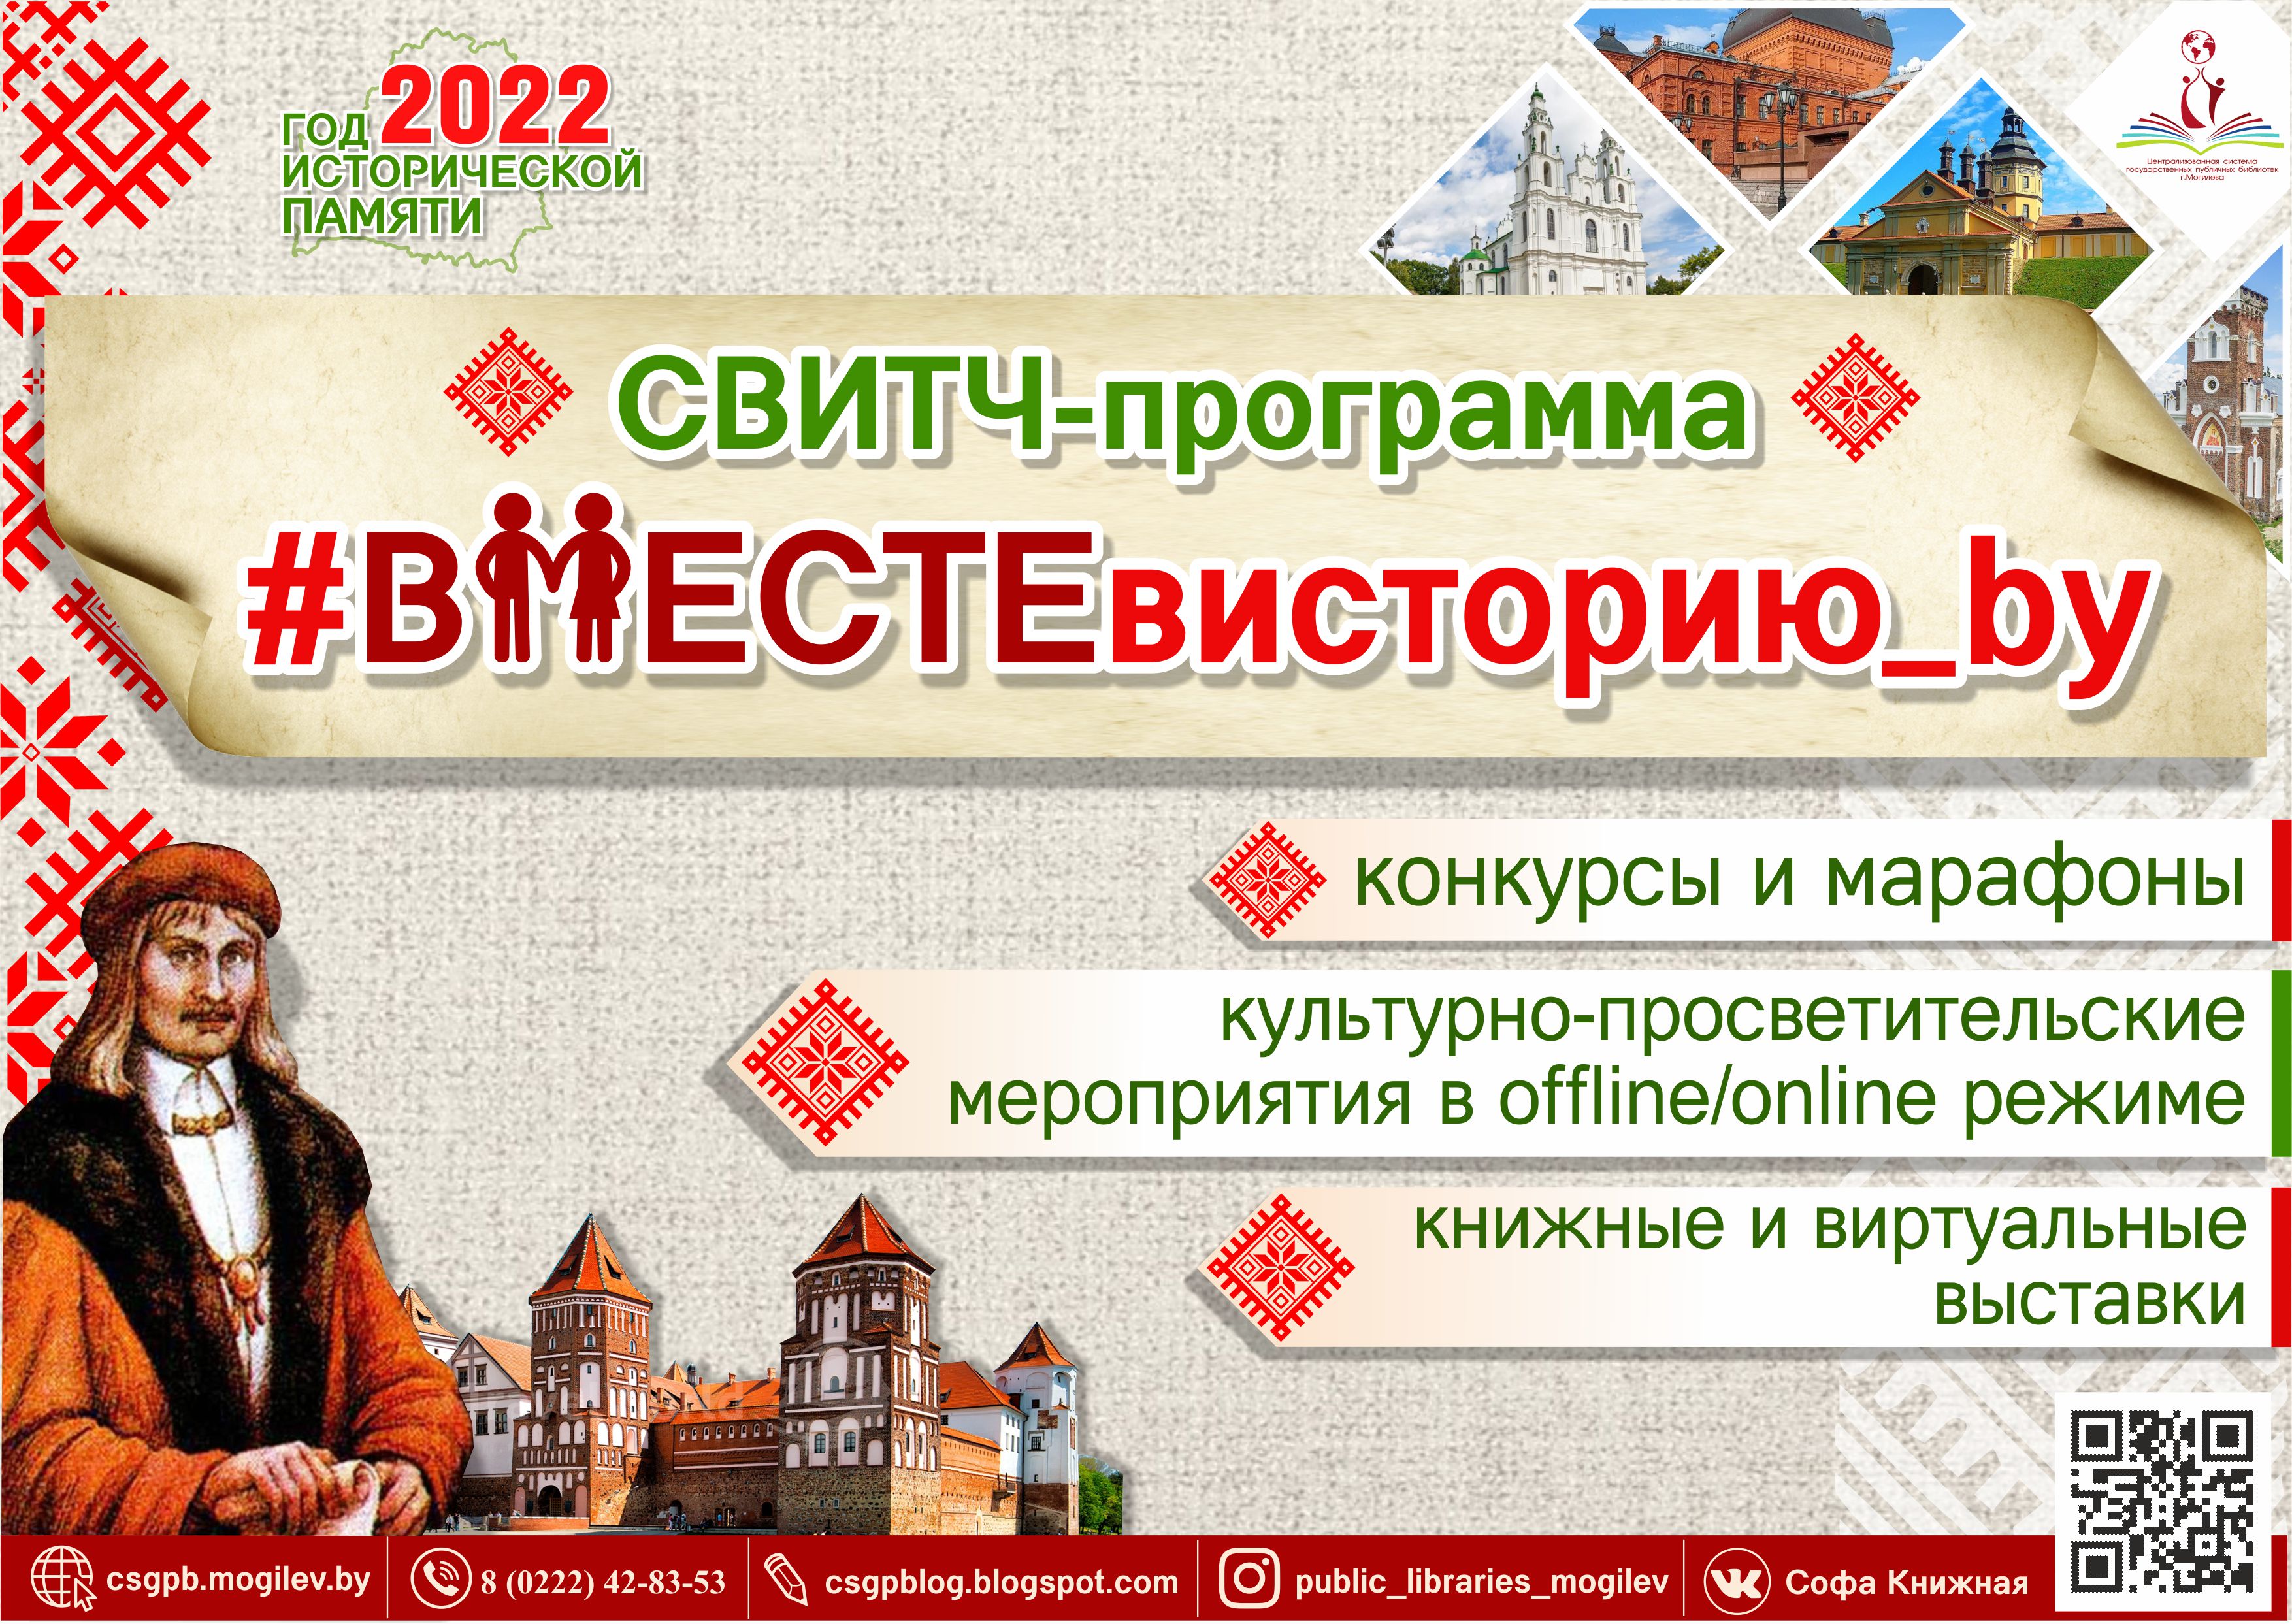 Библиотеки Могилева приглашают горожан стать участниками мероприятий, приуроченных к Году исторической памяти